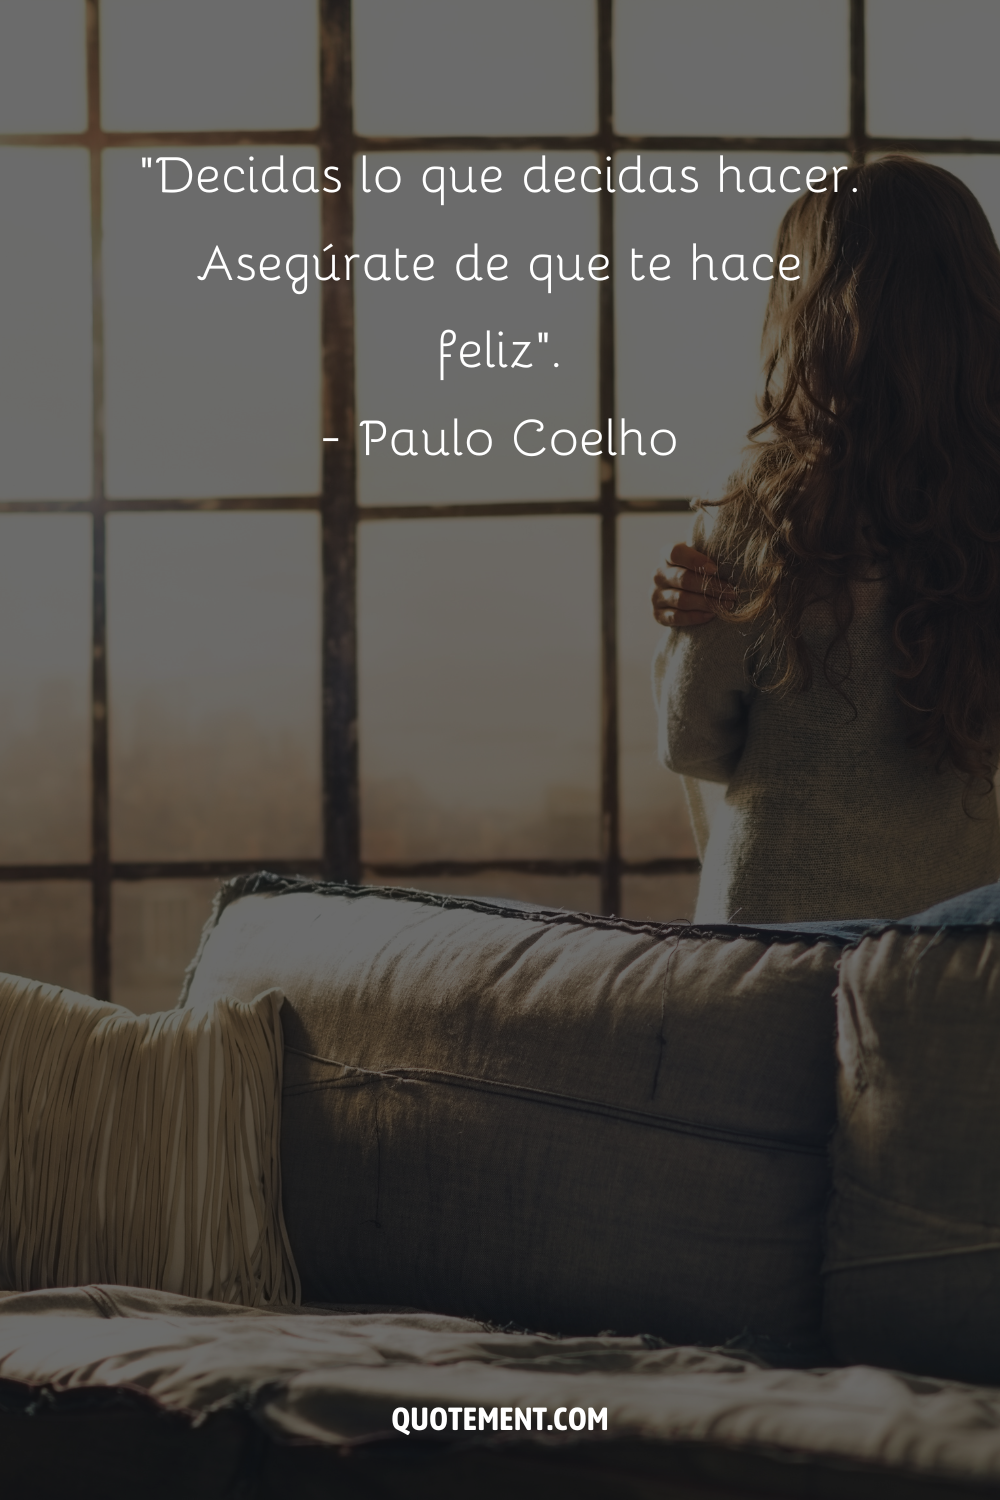 "Decidas lo que decidas hacer. Asegúrate de que te hace feliz". - Paulo Coelho